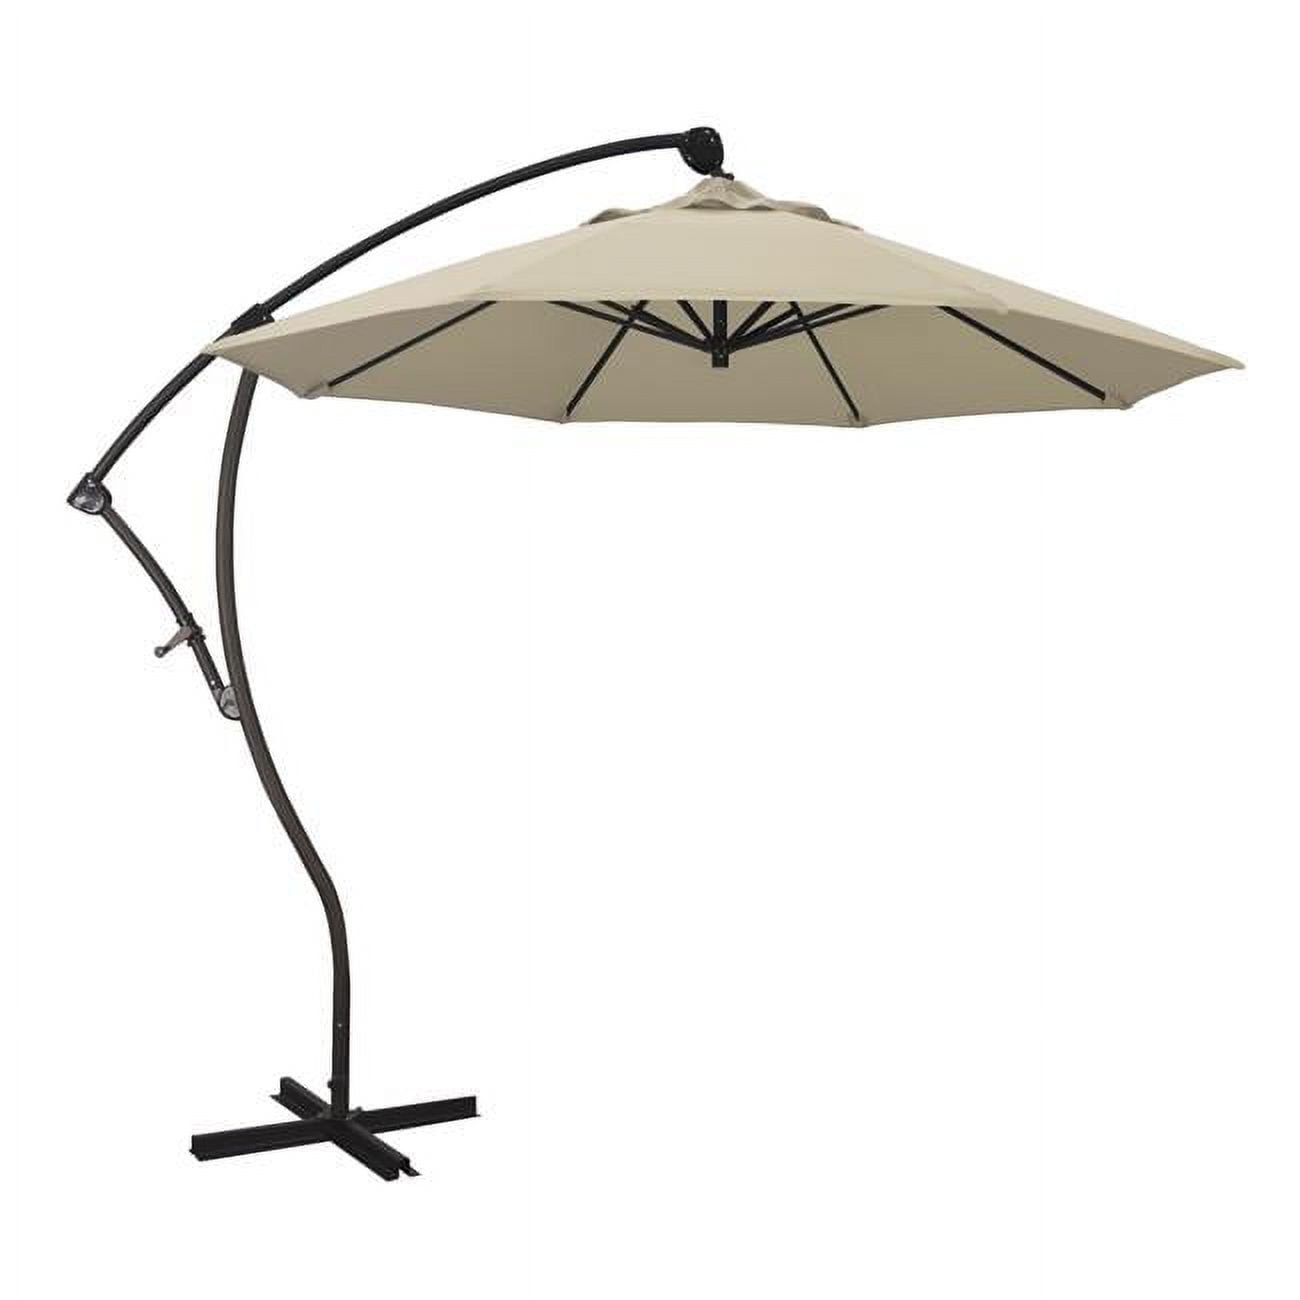 Ba908117-sa22 Bayside Bronze Market Umbrella, Beige - 9 Ft. X 8 Ribs